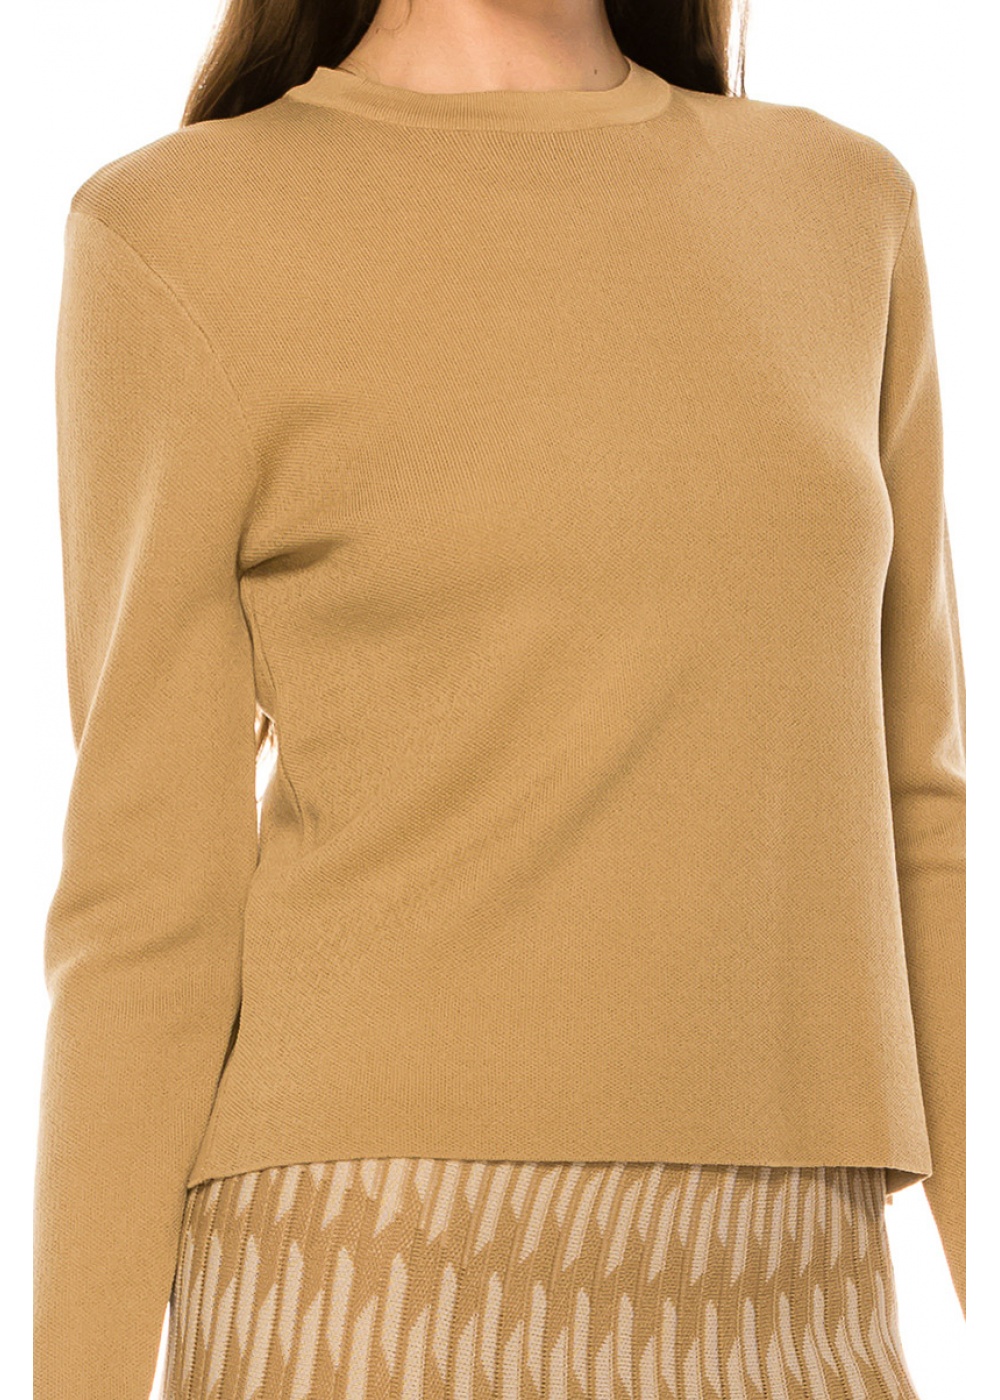 Sweater KA159 Camel